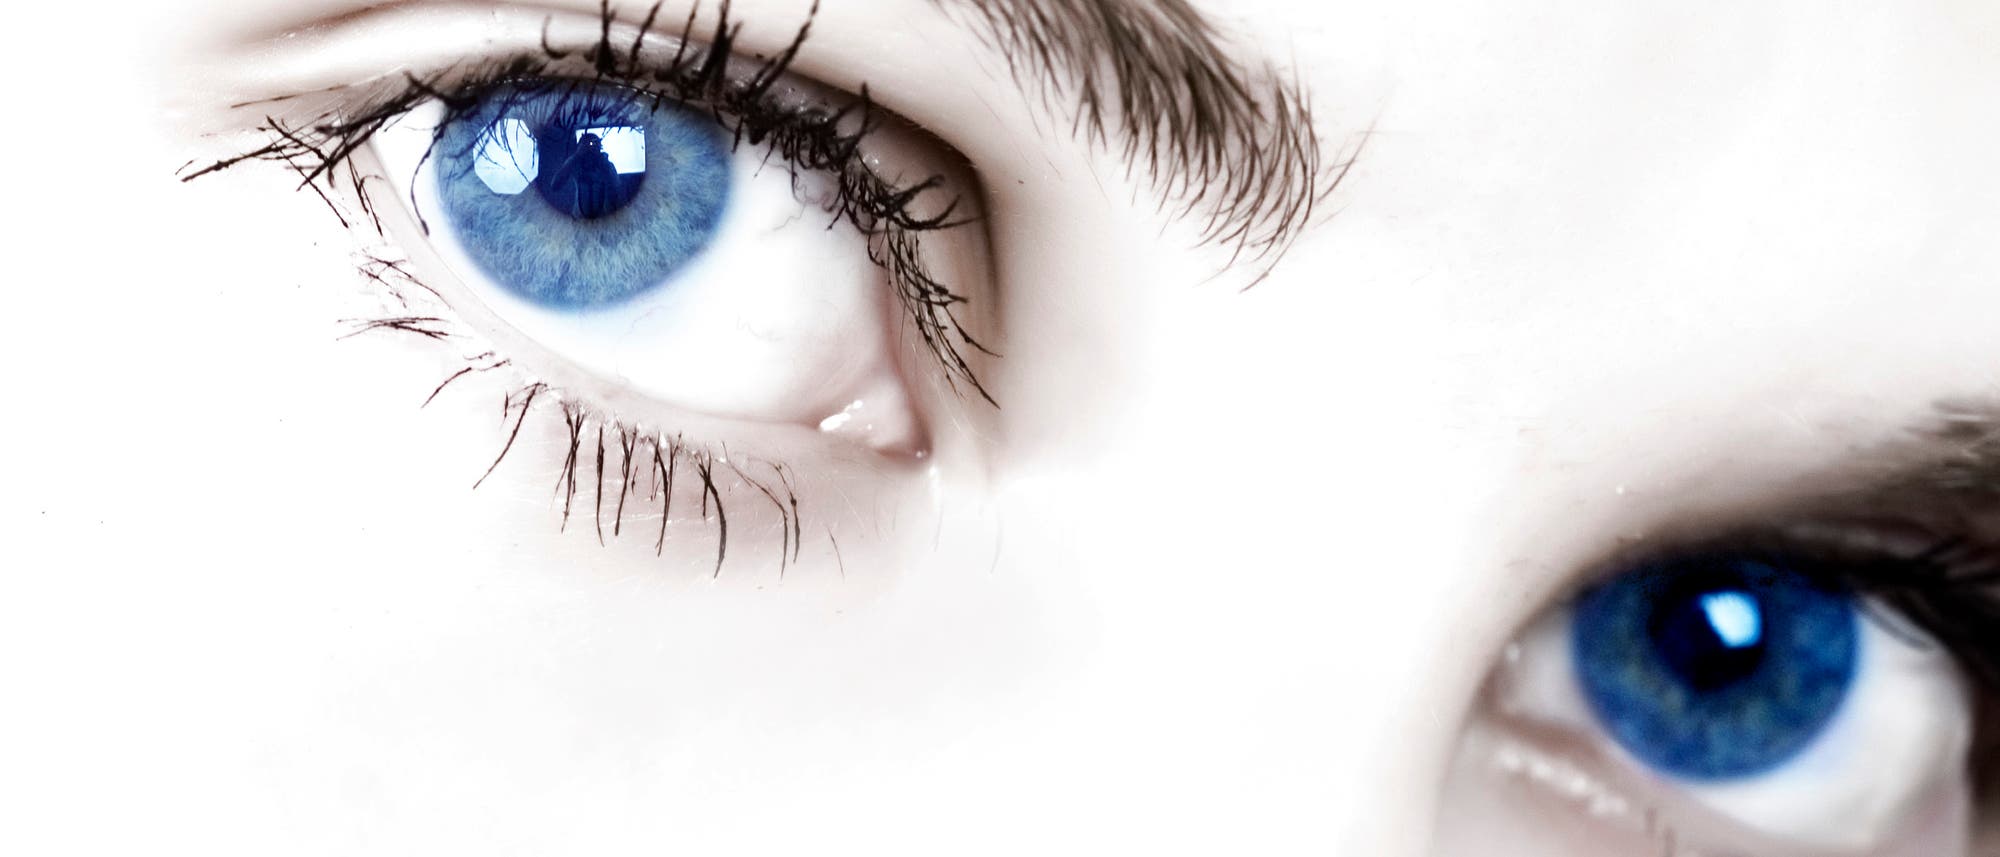 Blaue Augen